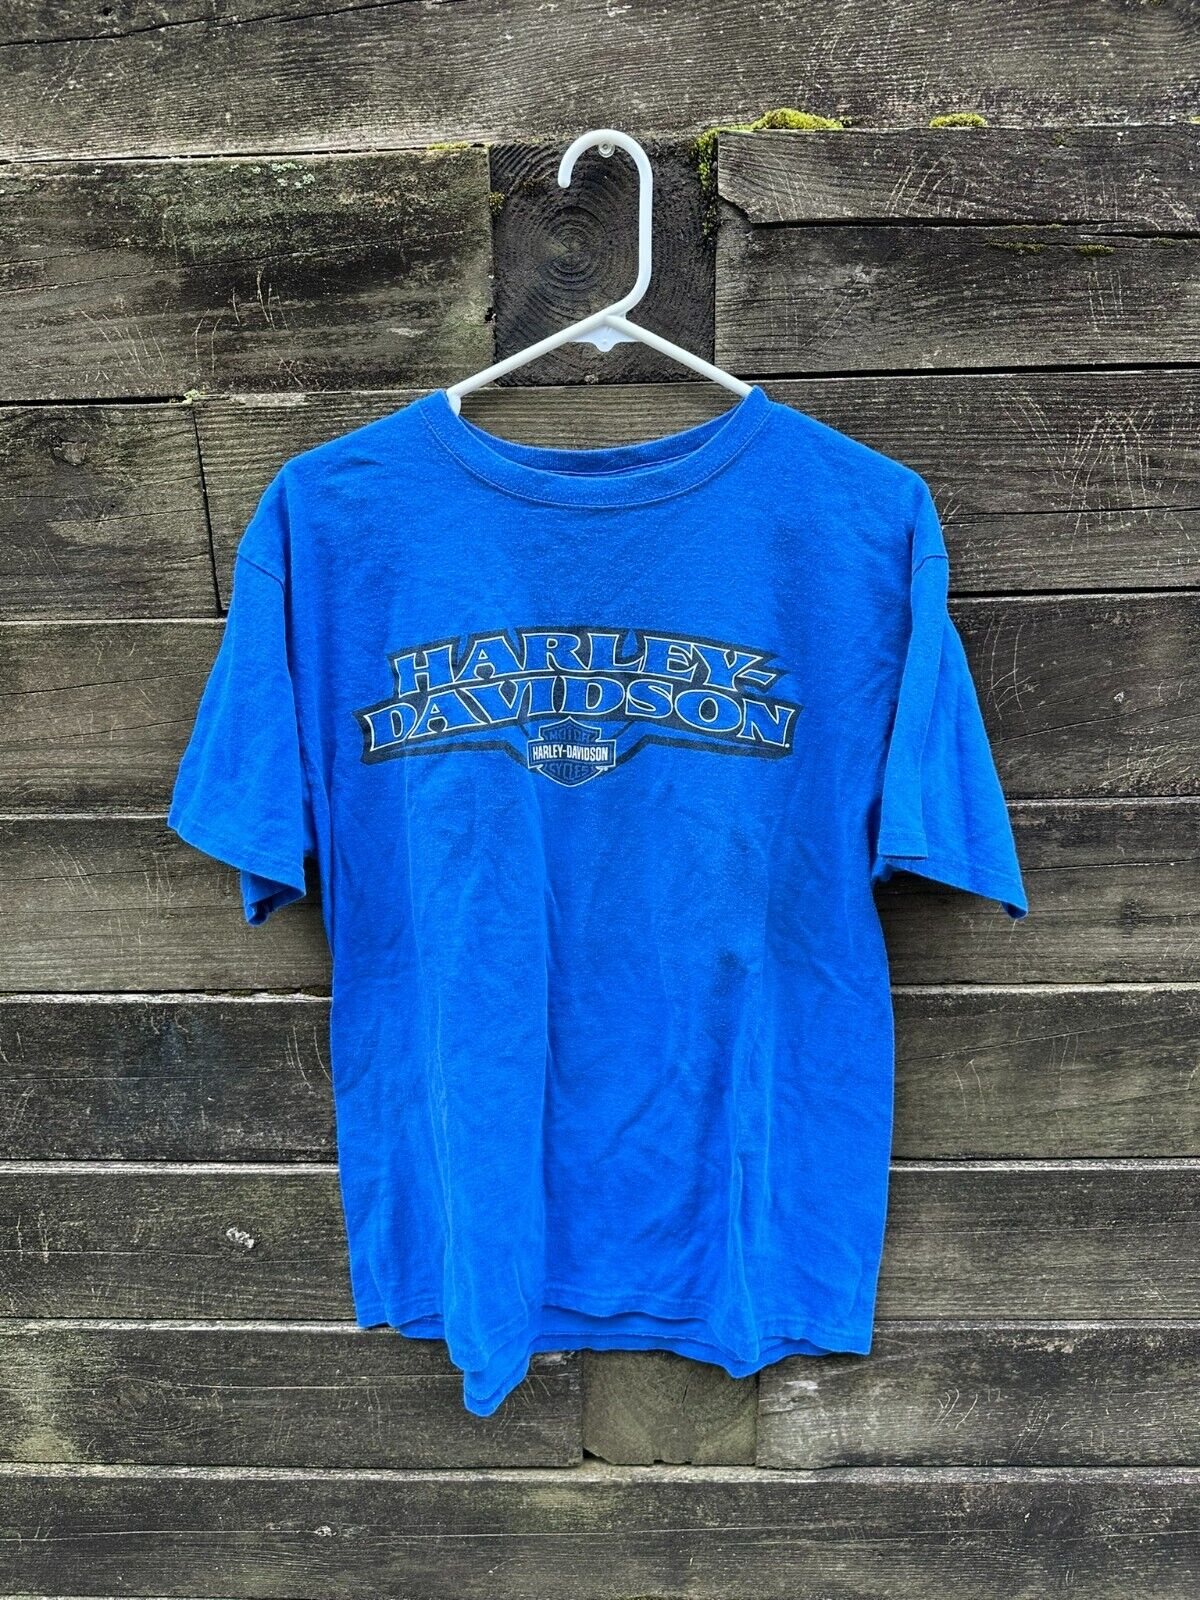 Harley Davidson Orland Florida T-Shirt Size Large Used